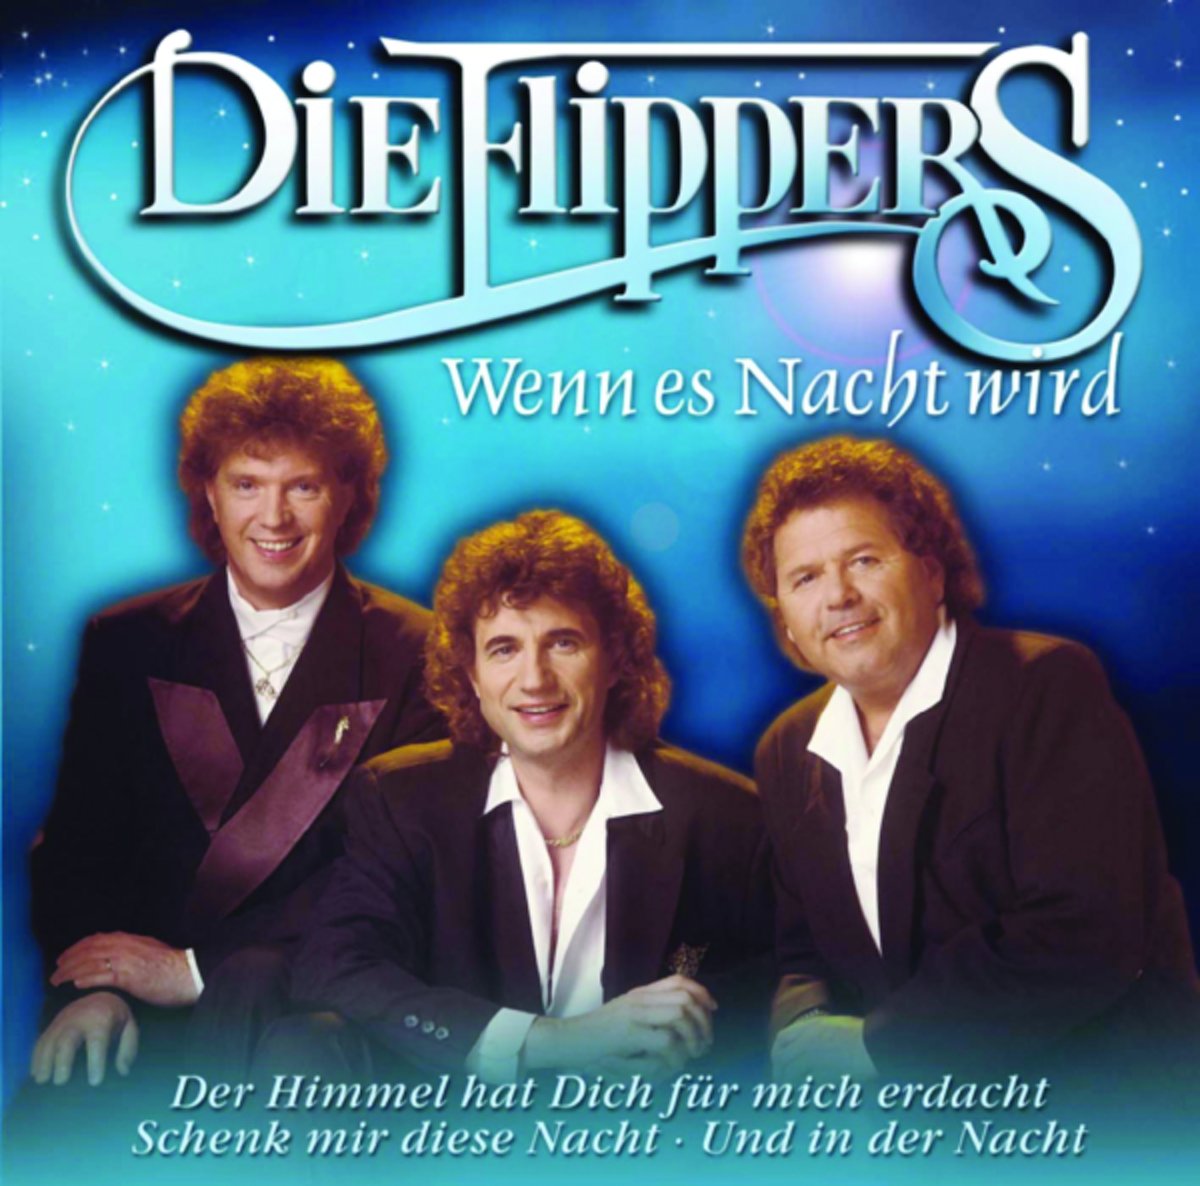  bol  com Wenn Es Nacht Wird Die  Flippers CD album 